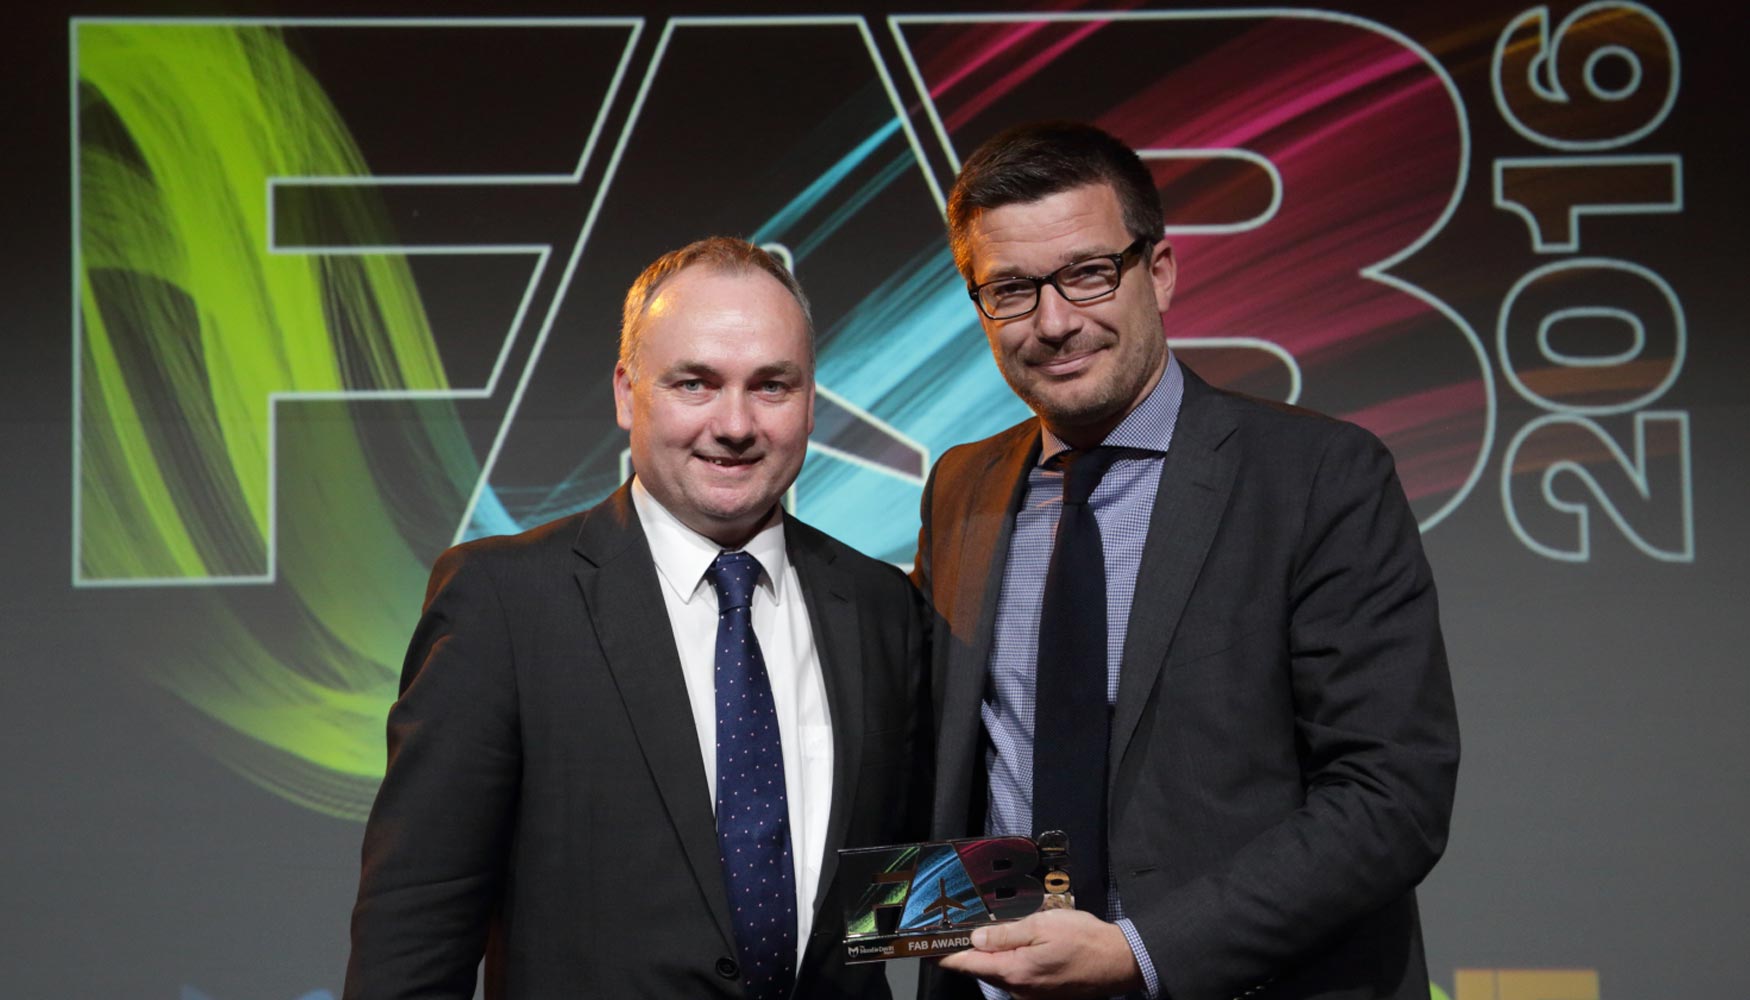 Para Philippe Salle, presidente y director general de Elior Group, los FAB Awards destacan el maravilloso trabajo de Guy Martin...